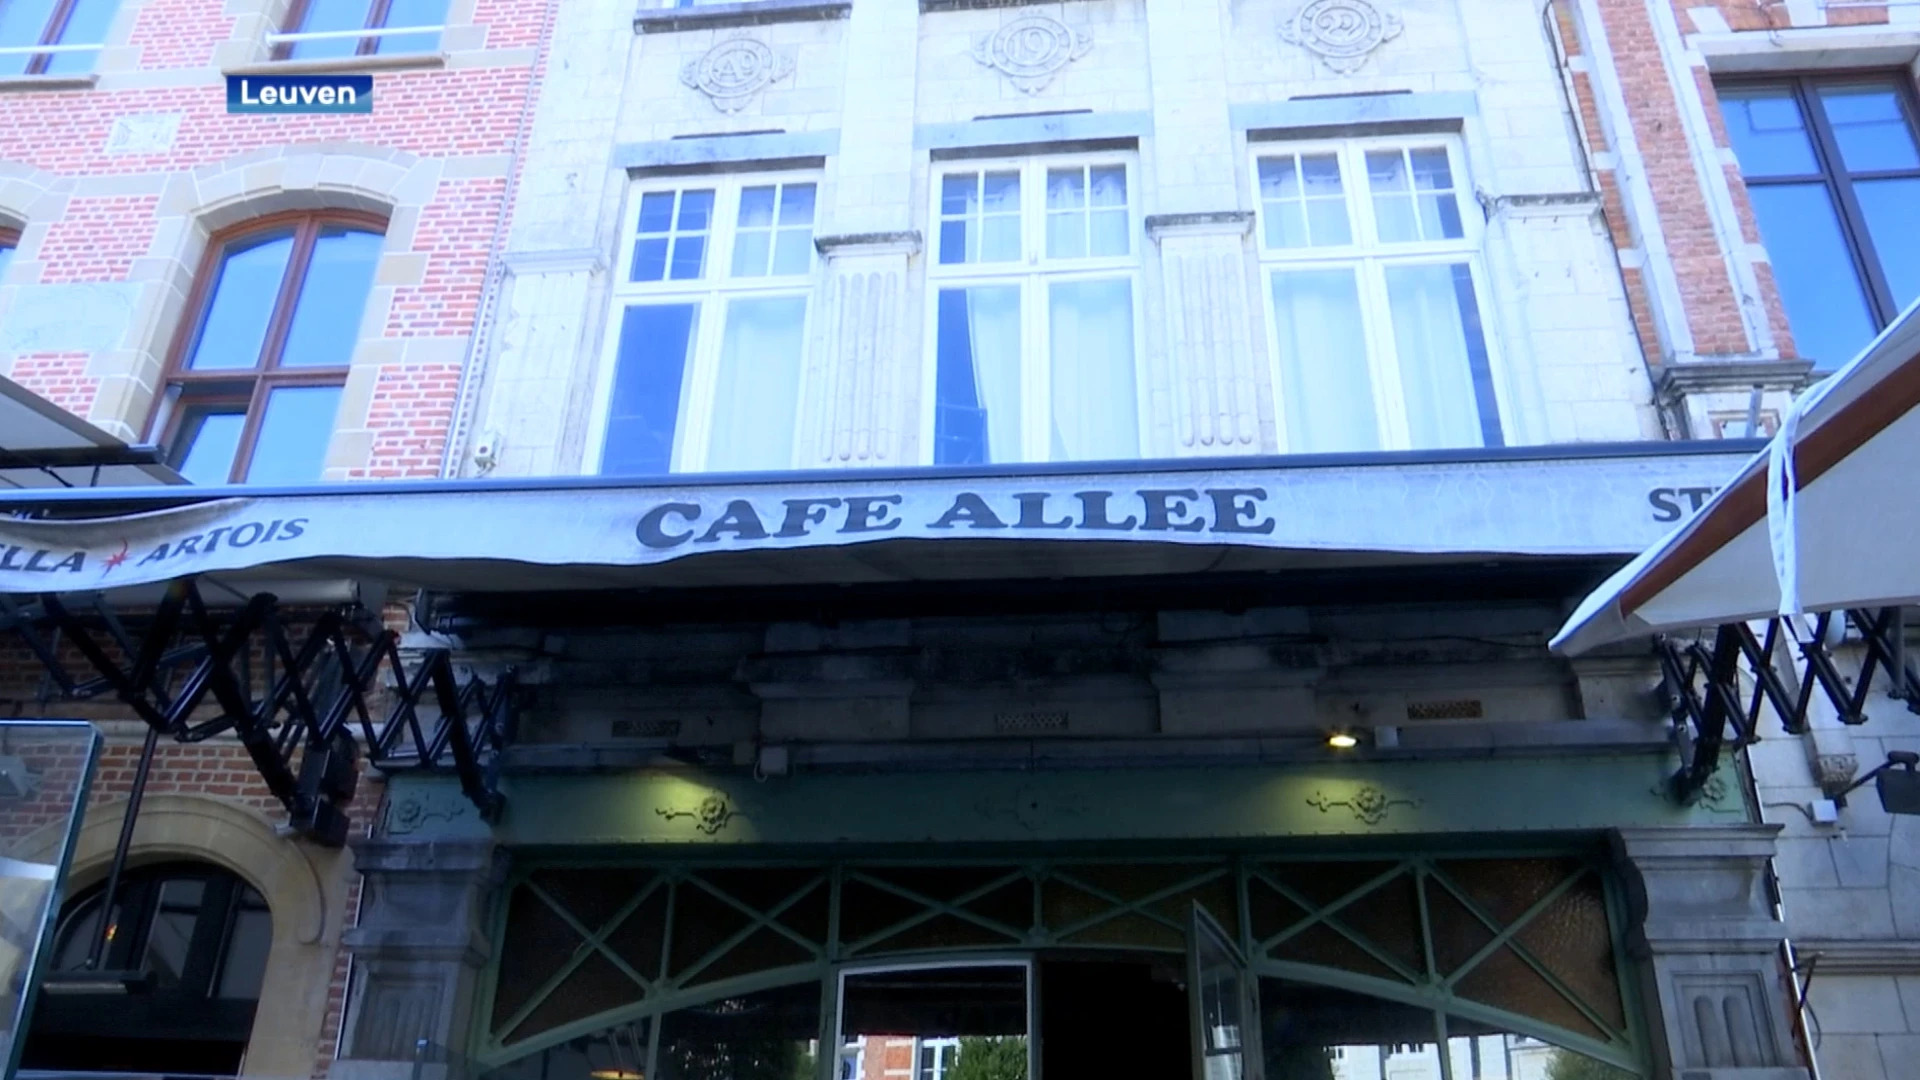 Café Den Allee in Leuven heropent op 3 september: "We zijn overweldigd door de vele positieve reacties"